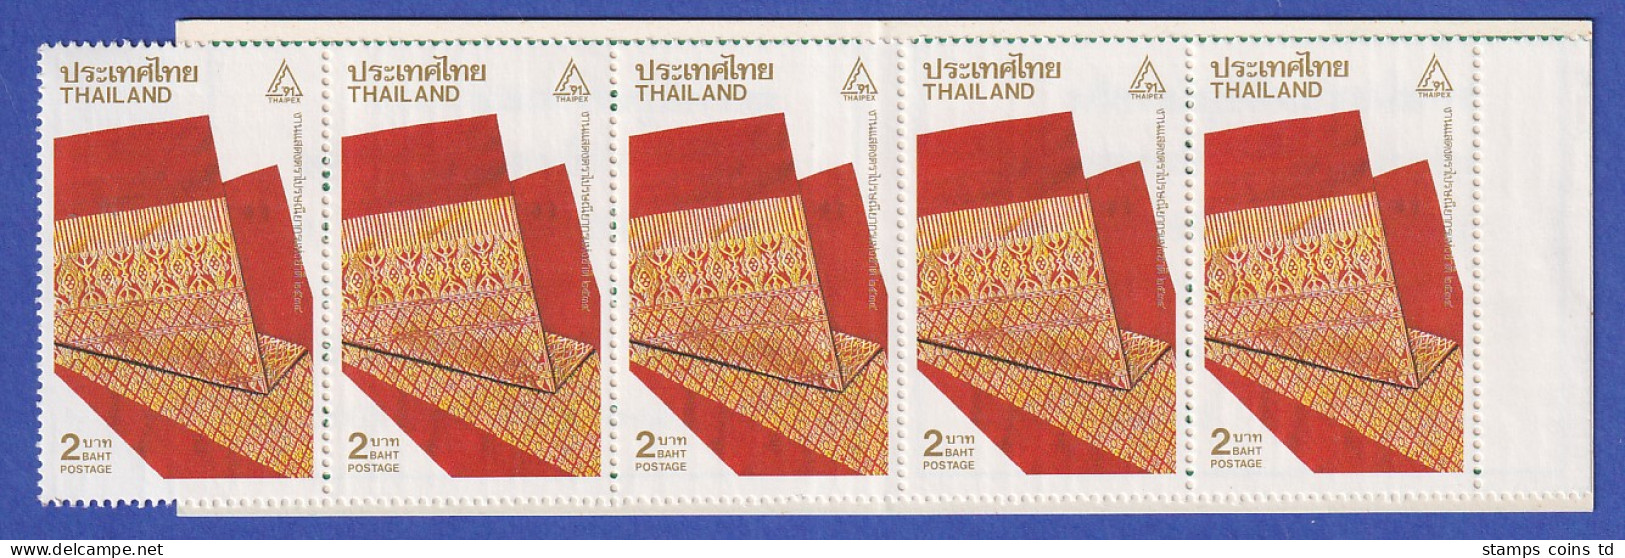 Thailand 1991 THAIPEX '91 Webmuster Mi.-Nr. 1417 A Markenheftchen ** / MNH - Thailand